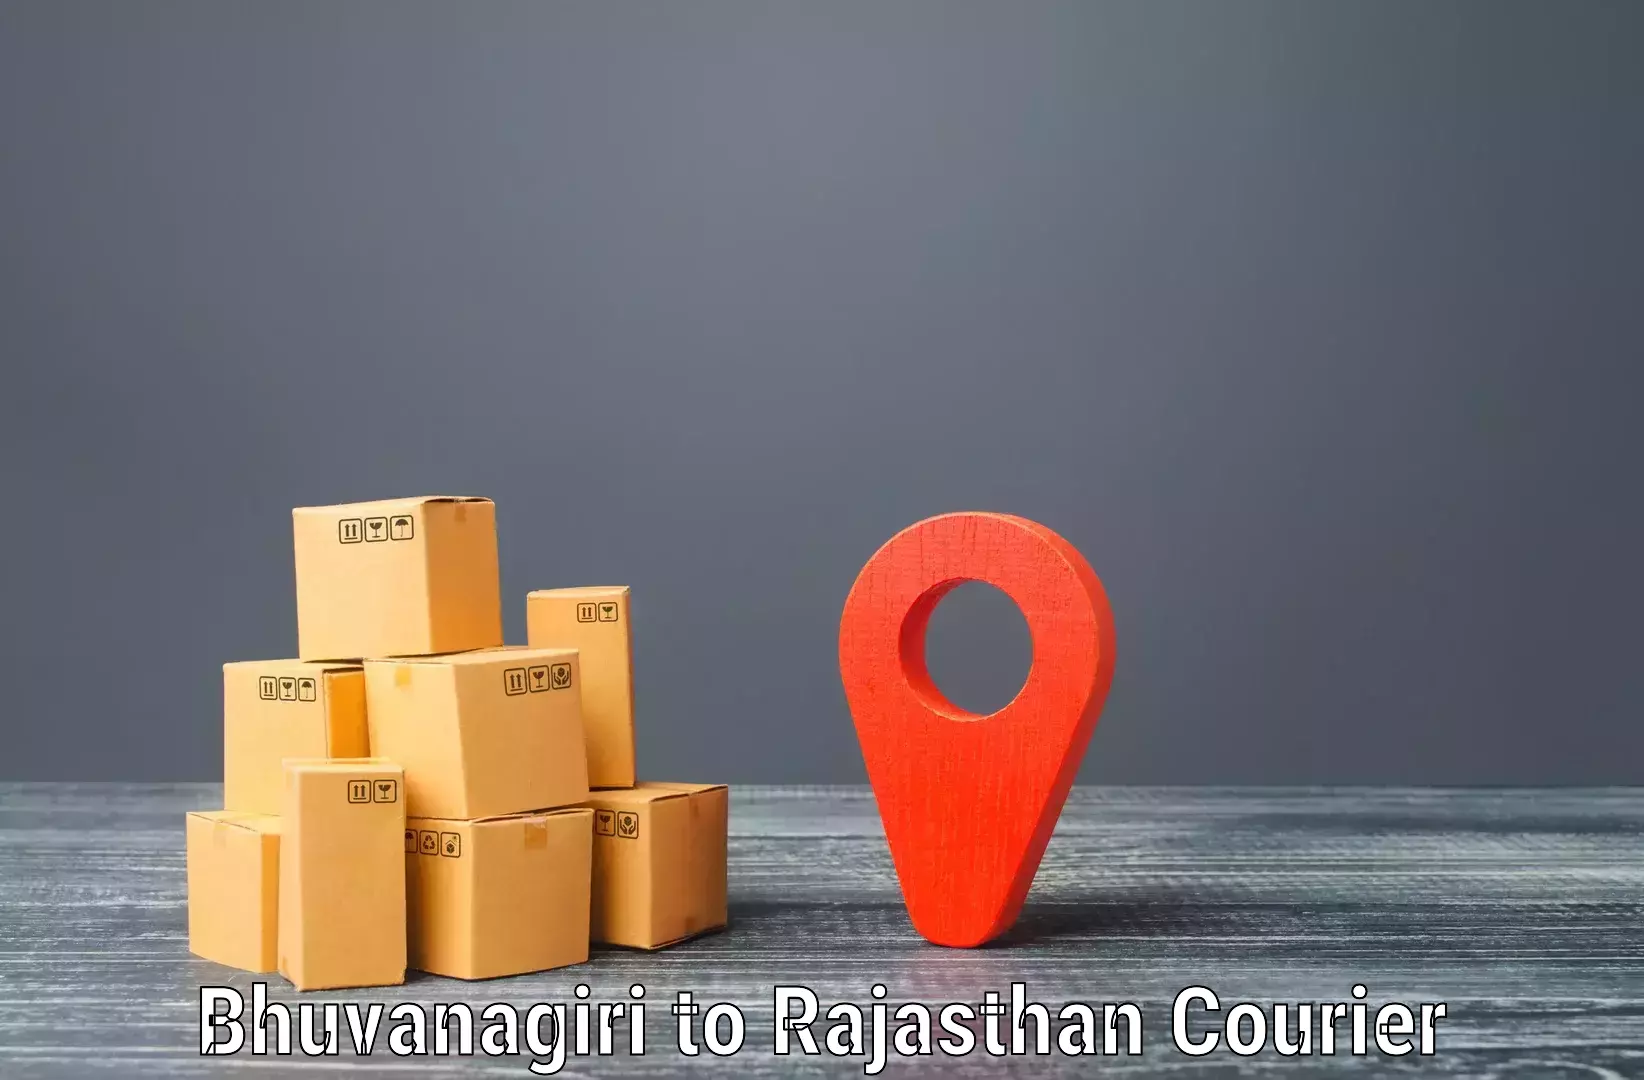 Next-day delivery options Bhuvanagiri to IIT Jodhpur